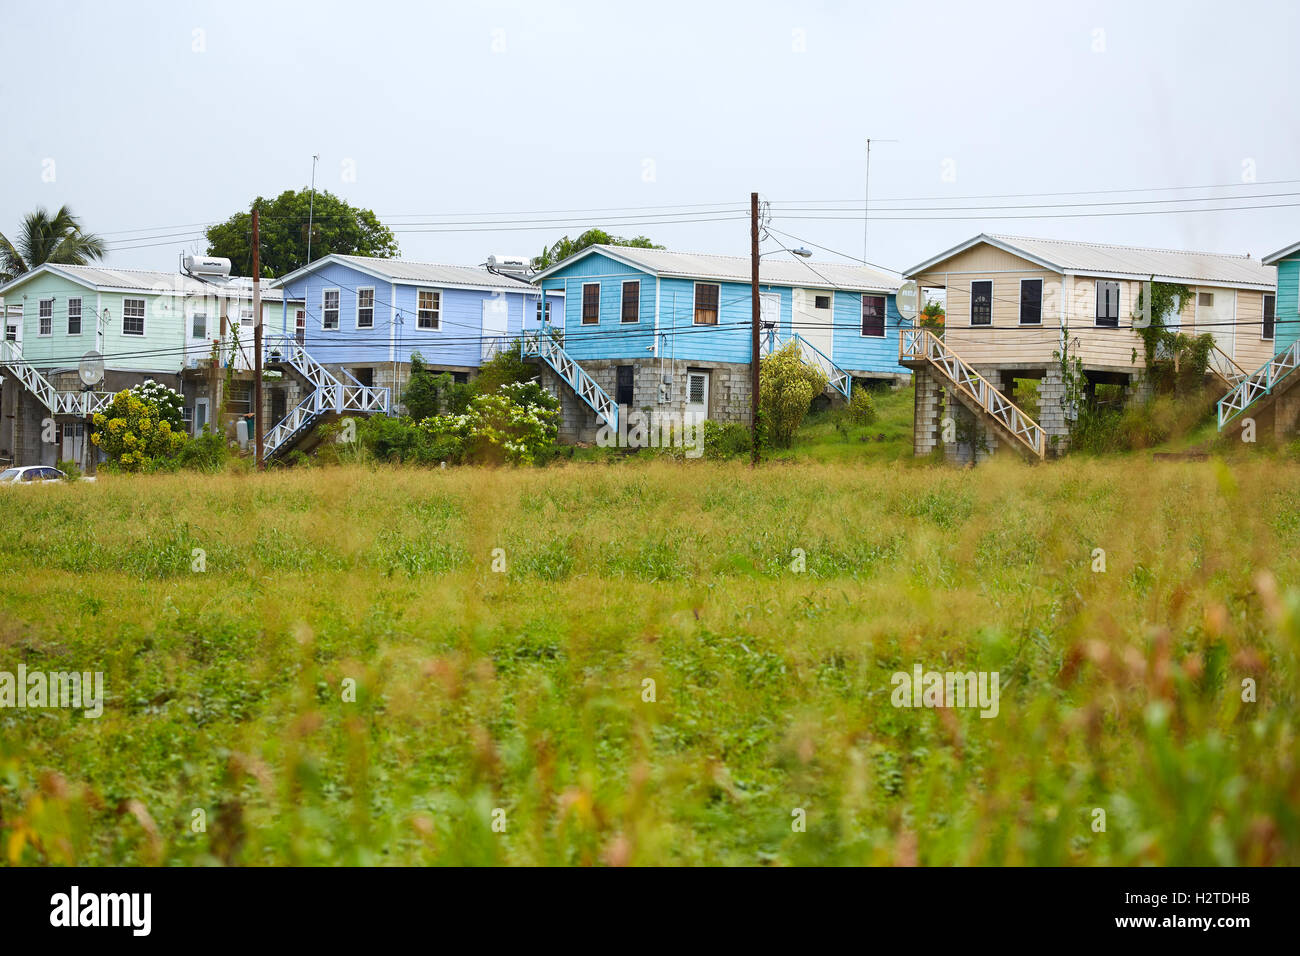 Barbados Häuser Hütten helle Farbe typischen kleinen Dorf nördlich von der Insel Hütte Häuser Exemplar Landschaft traditionelle ch Stockfoto